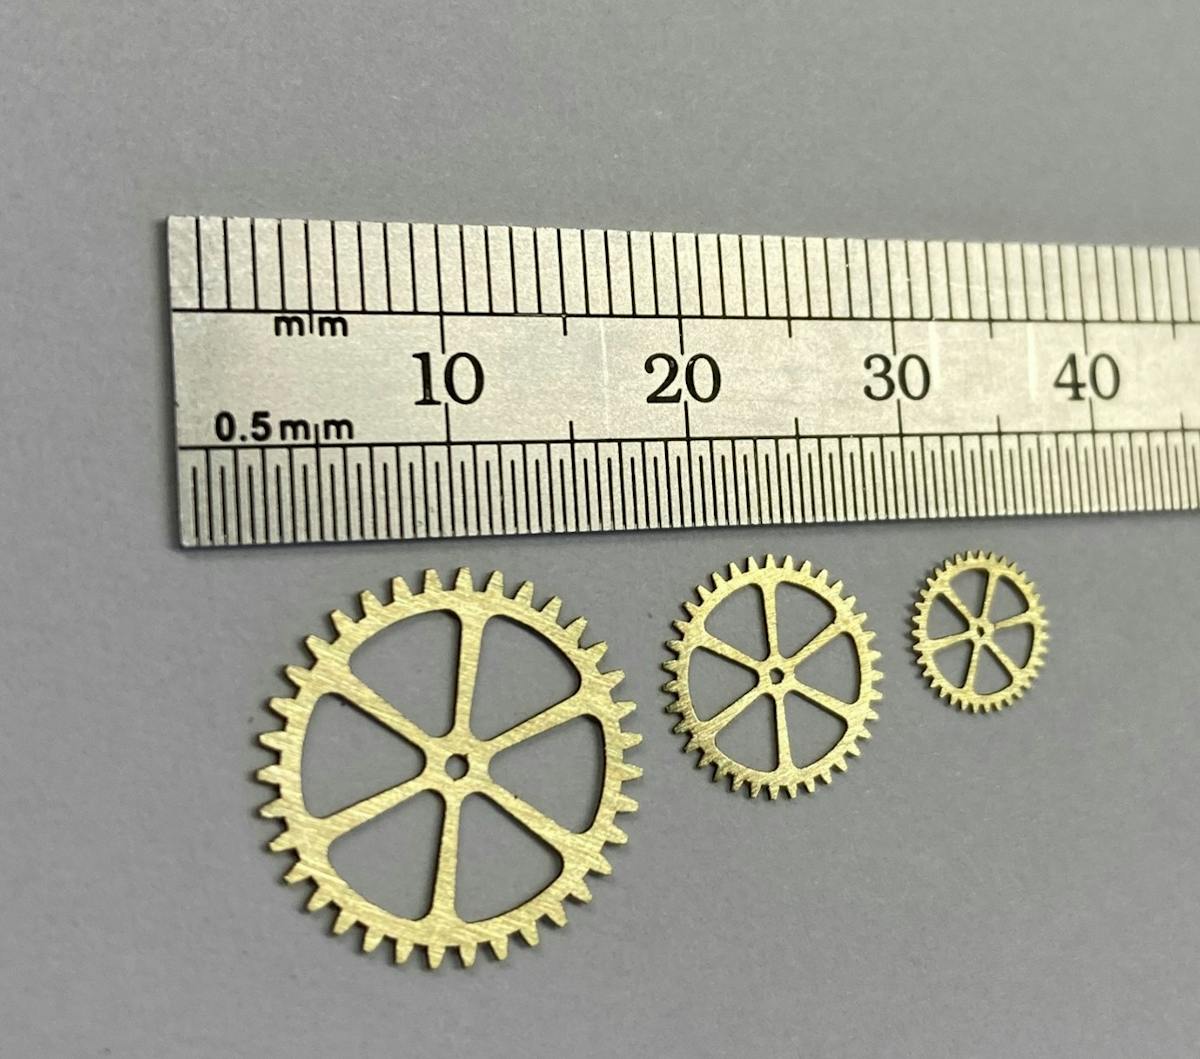 FIGURE 2. Erosion-cut micro gears from 0.35 mm brass.